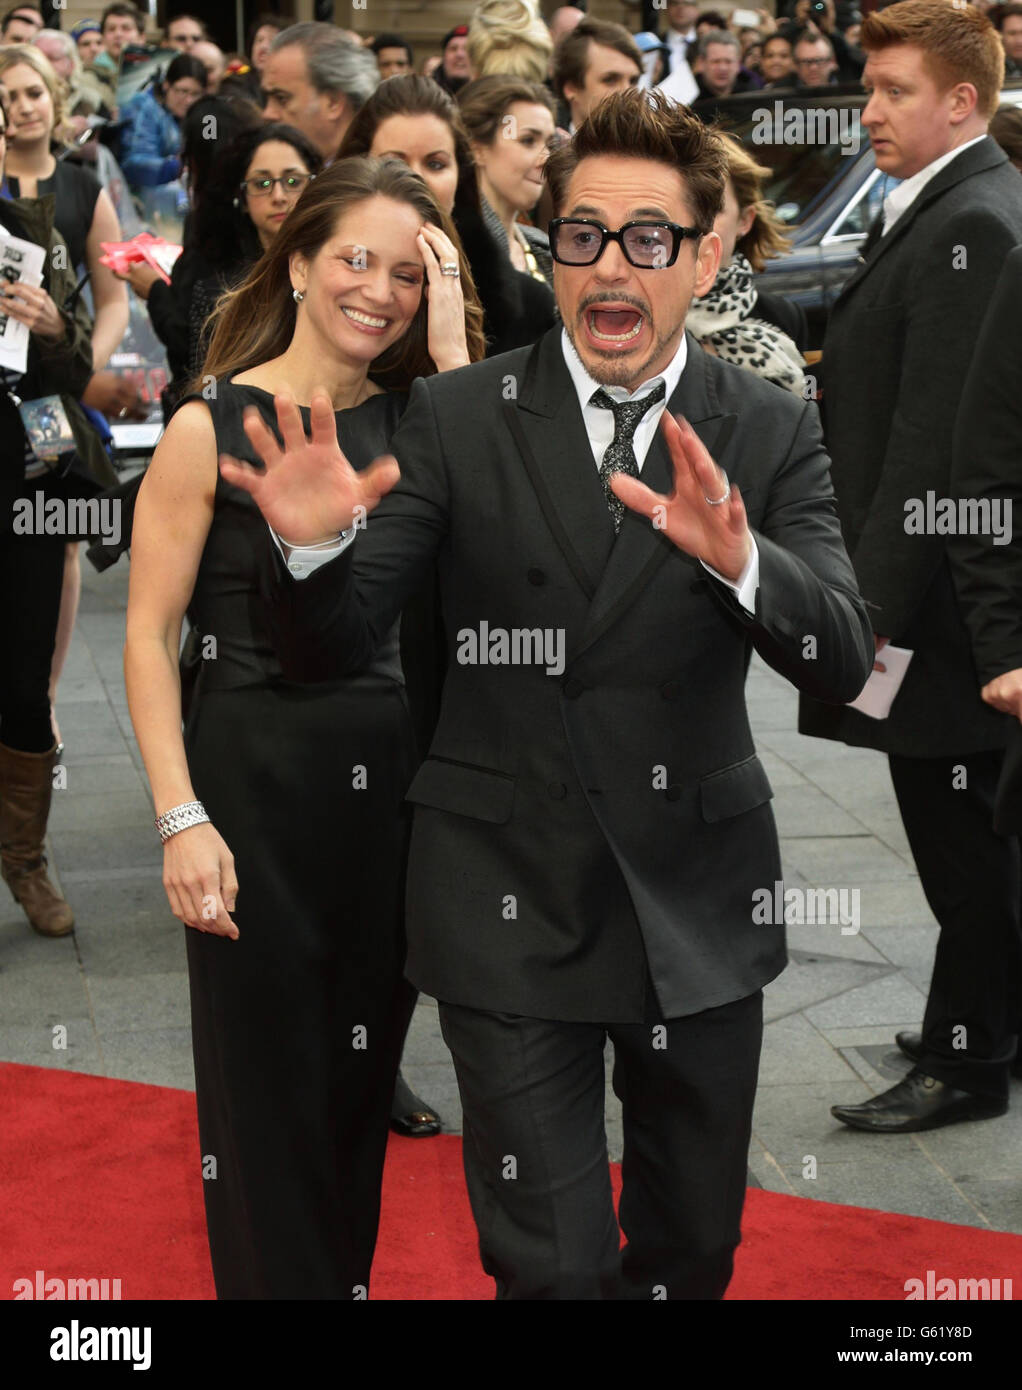 Robert Downey Jr und seine Frau Susan Downey kommen zur Premiere von Iron man 3 am Odeon Leicester Square in London an. Stockfoto